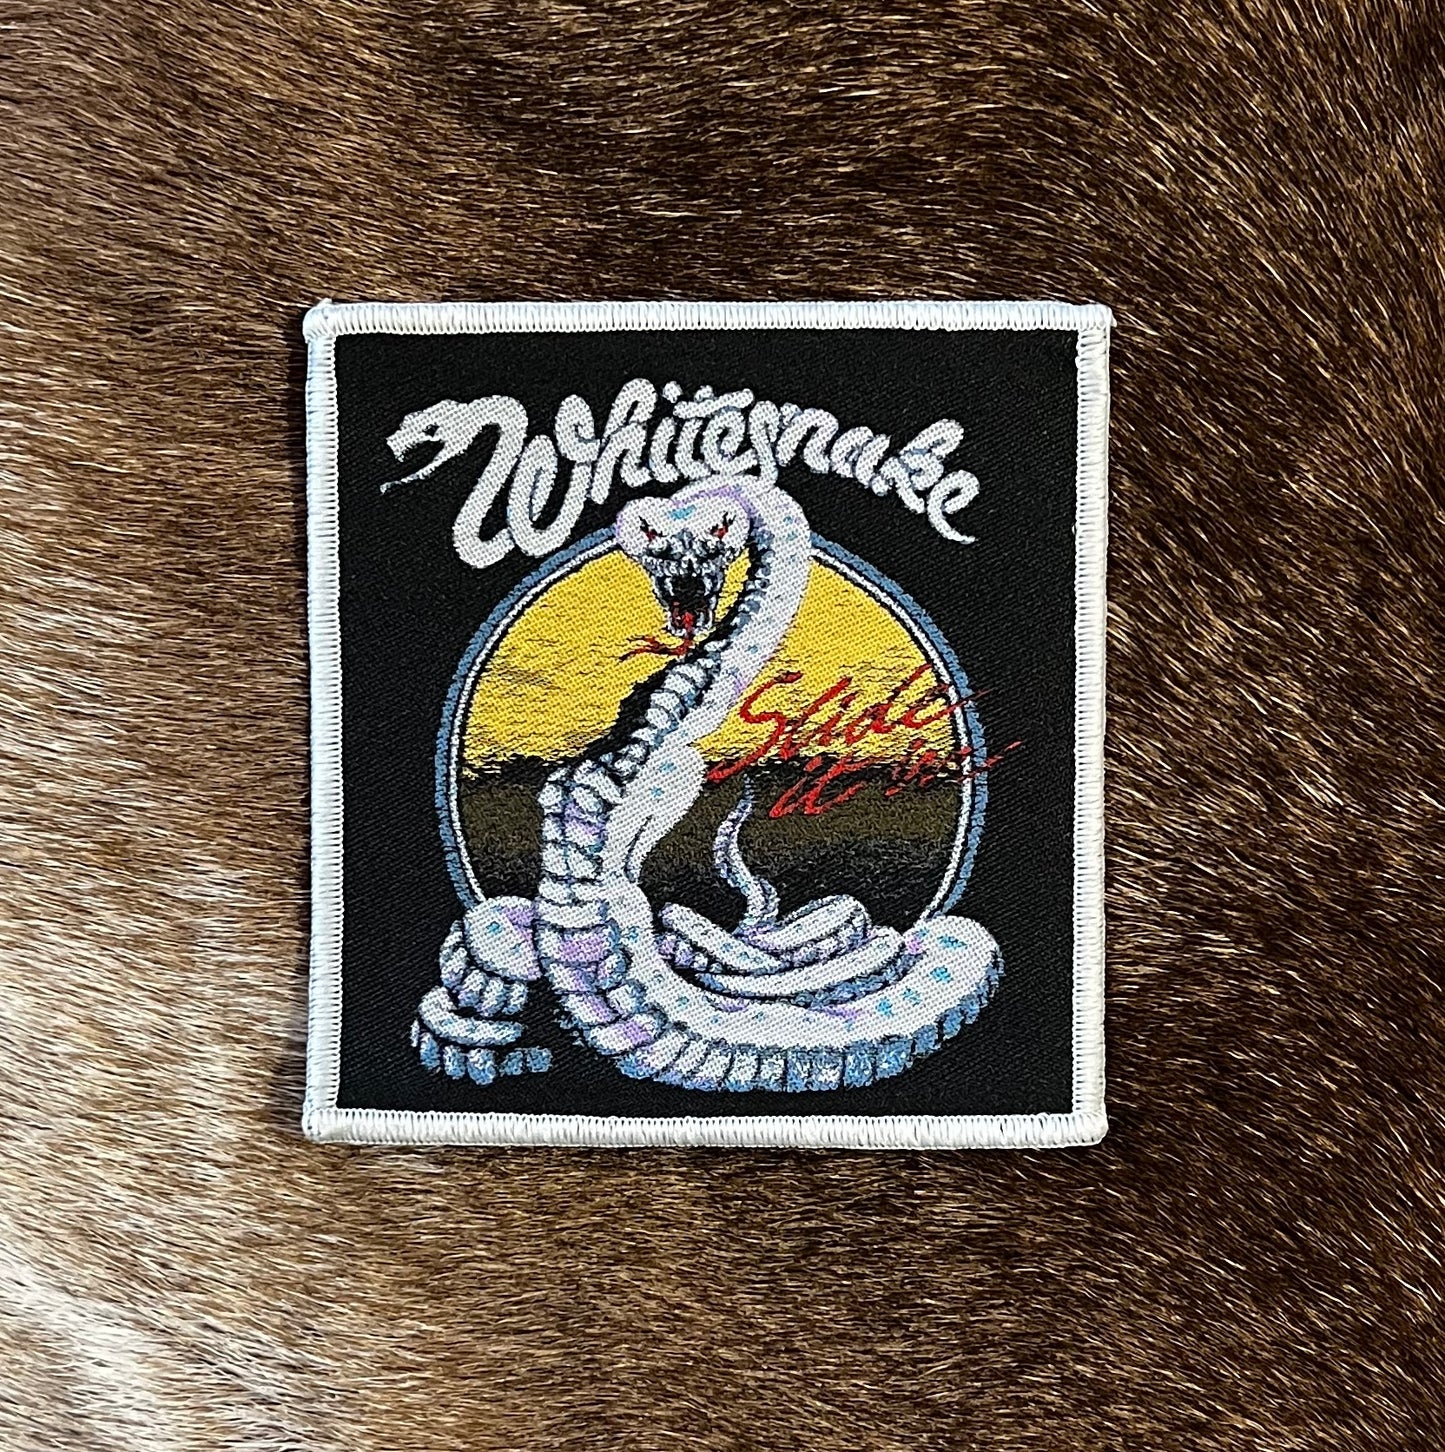 Whitesnake - Slide It In Patch